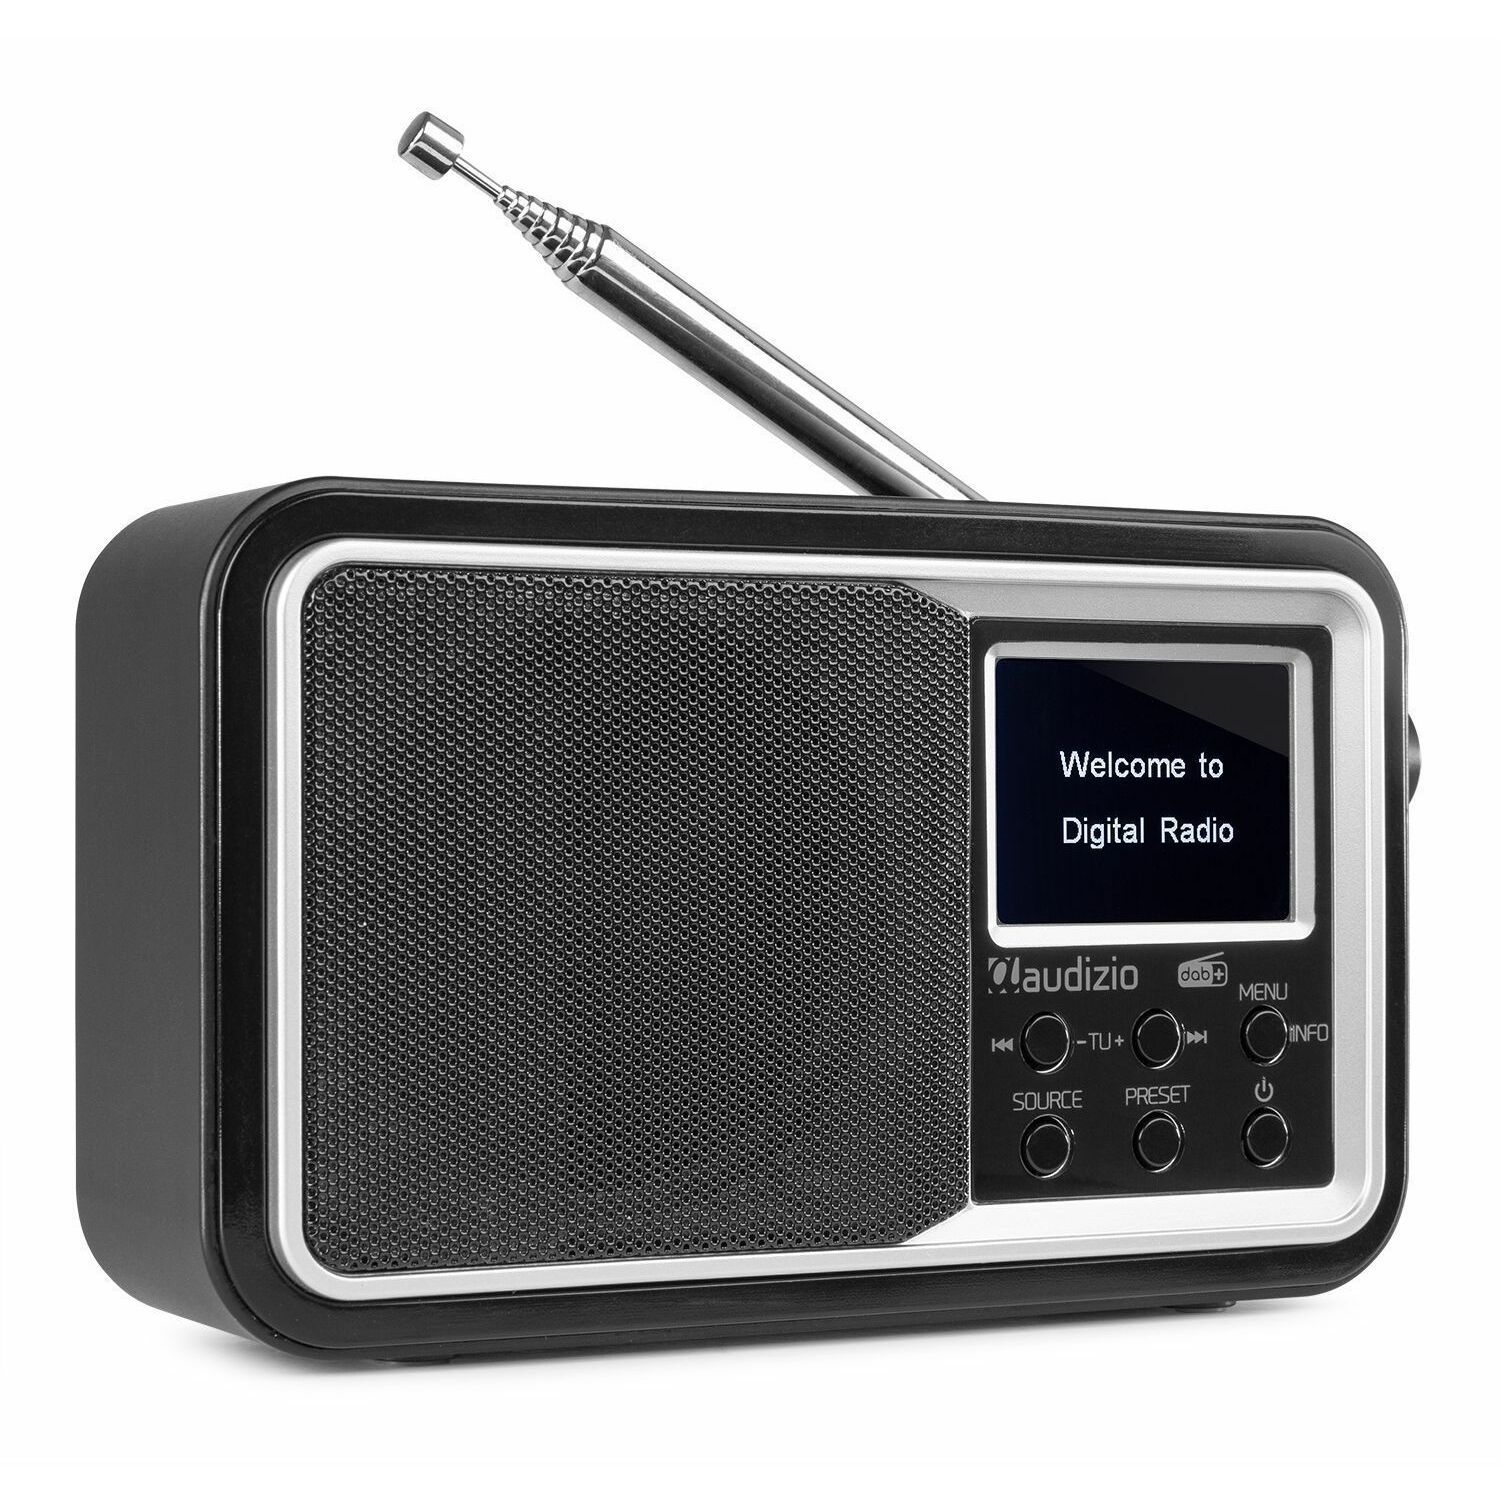 Nevelig delicaat Leggen Audizio Parma draagbare DAB radio met Bluetooth en FM radio - Zwart kopen?